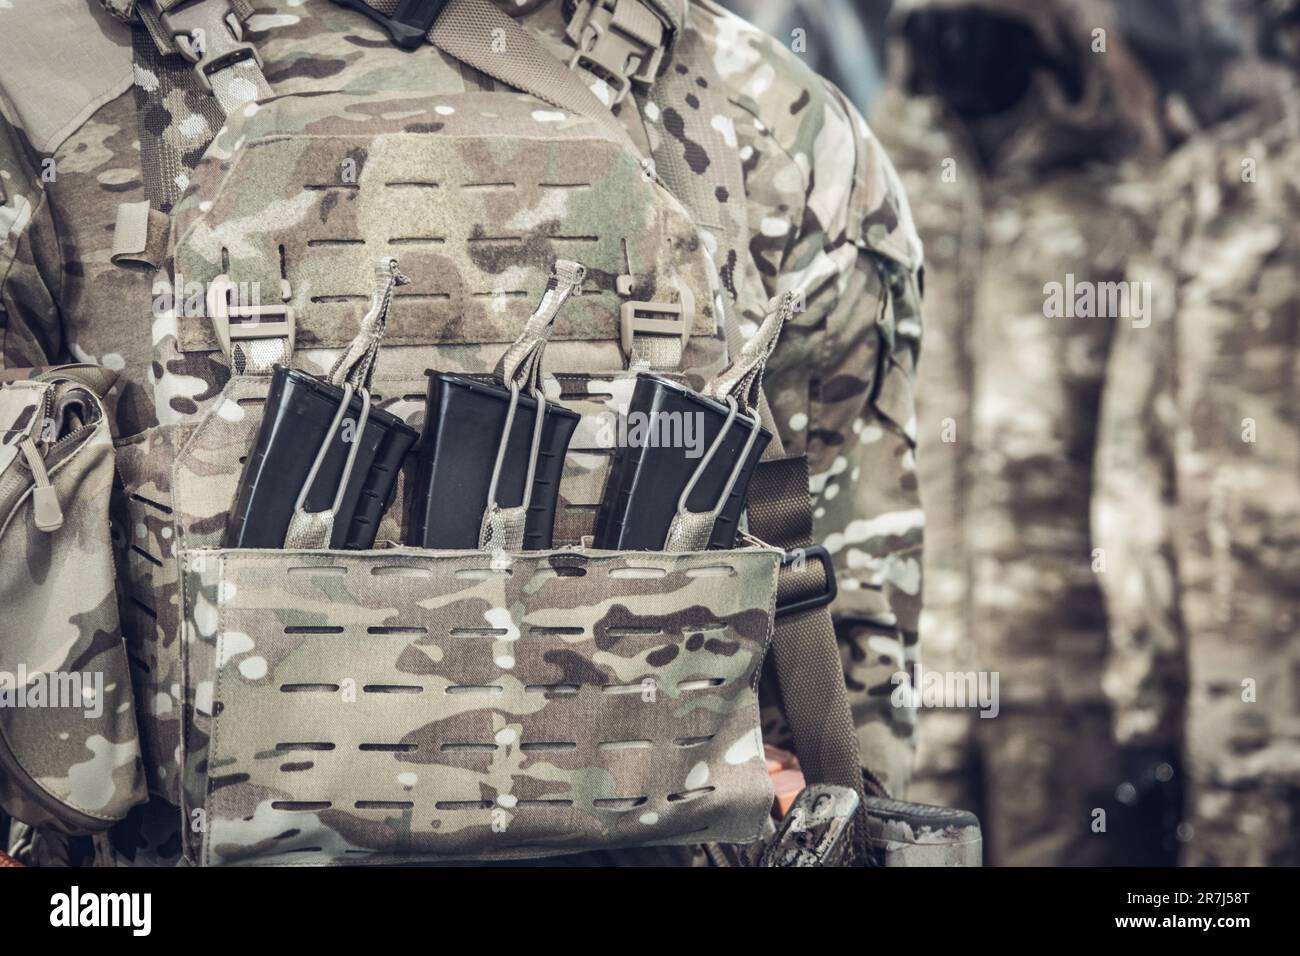 Militärische Ausrüstung eines Soldaten, Maschinengewehr auf dem Hintergrund einer Körperpanzerung Stockfoto